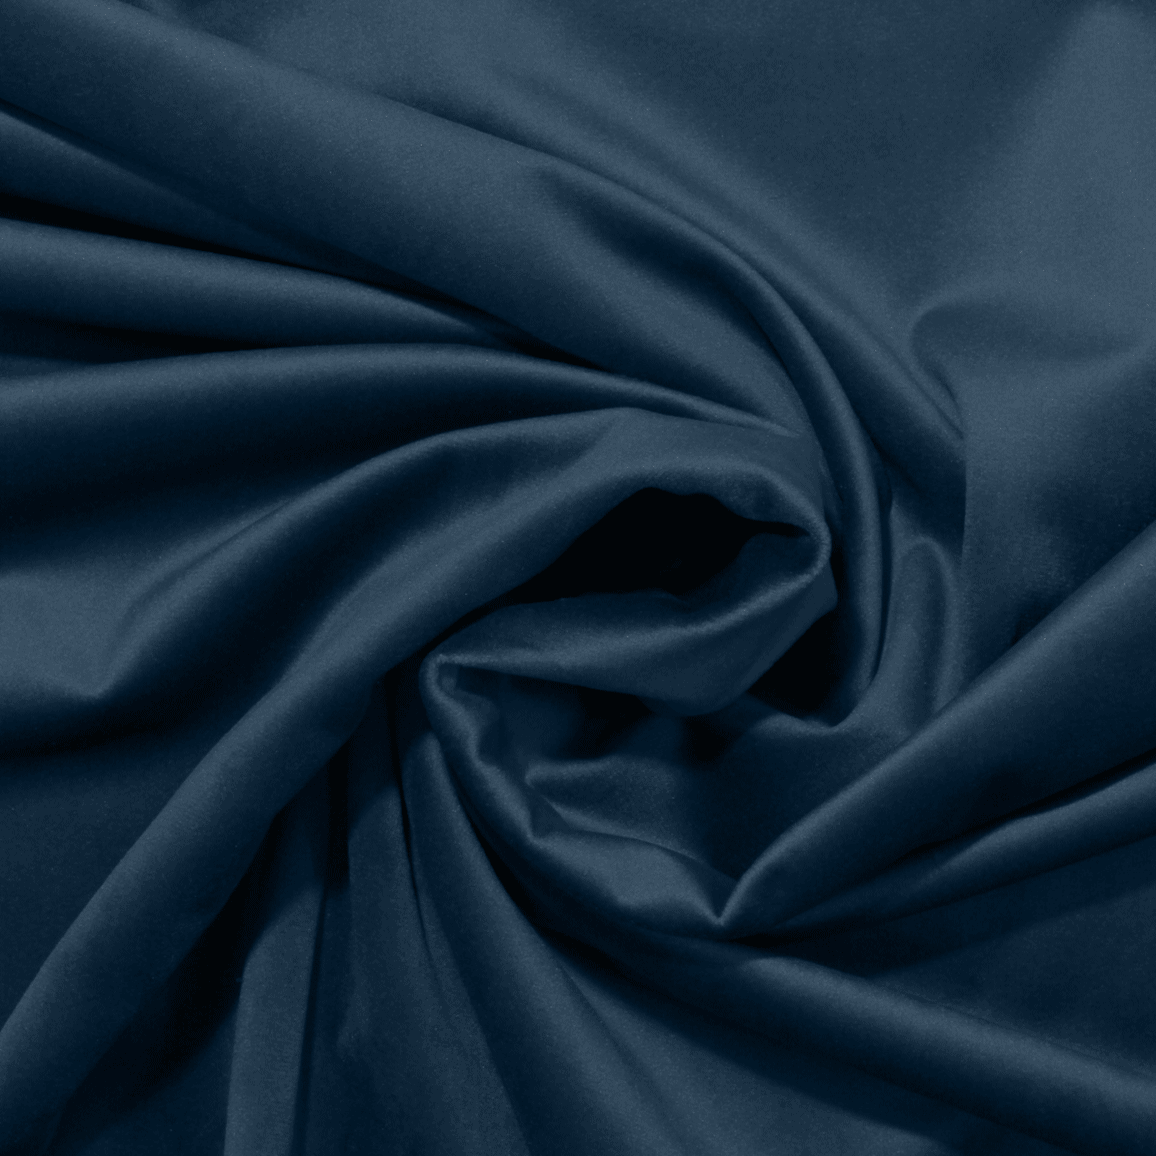 Terciopelo para decoración - azul oscuro